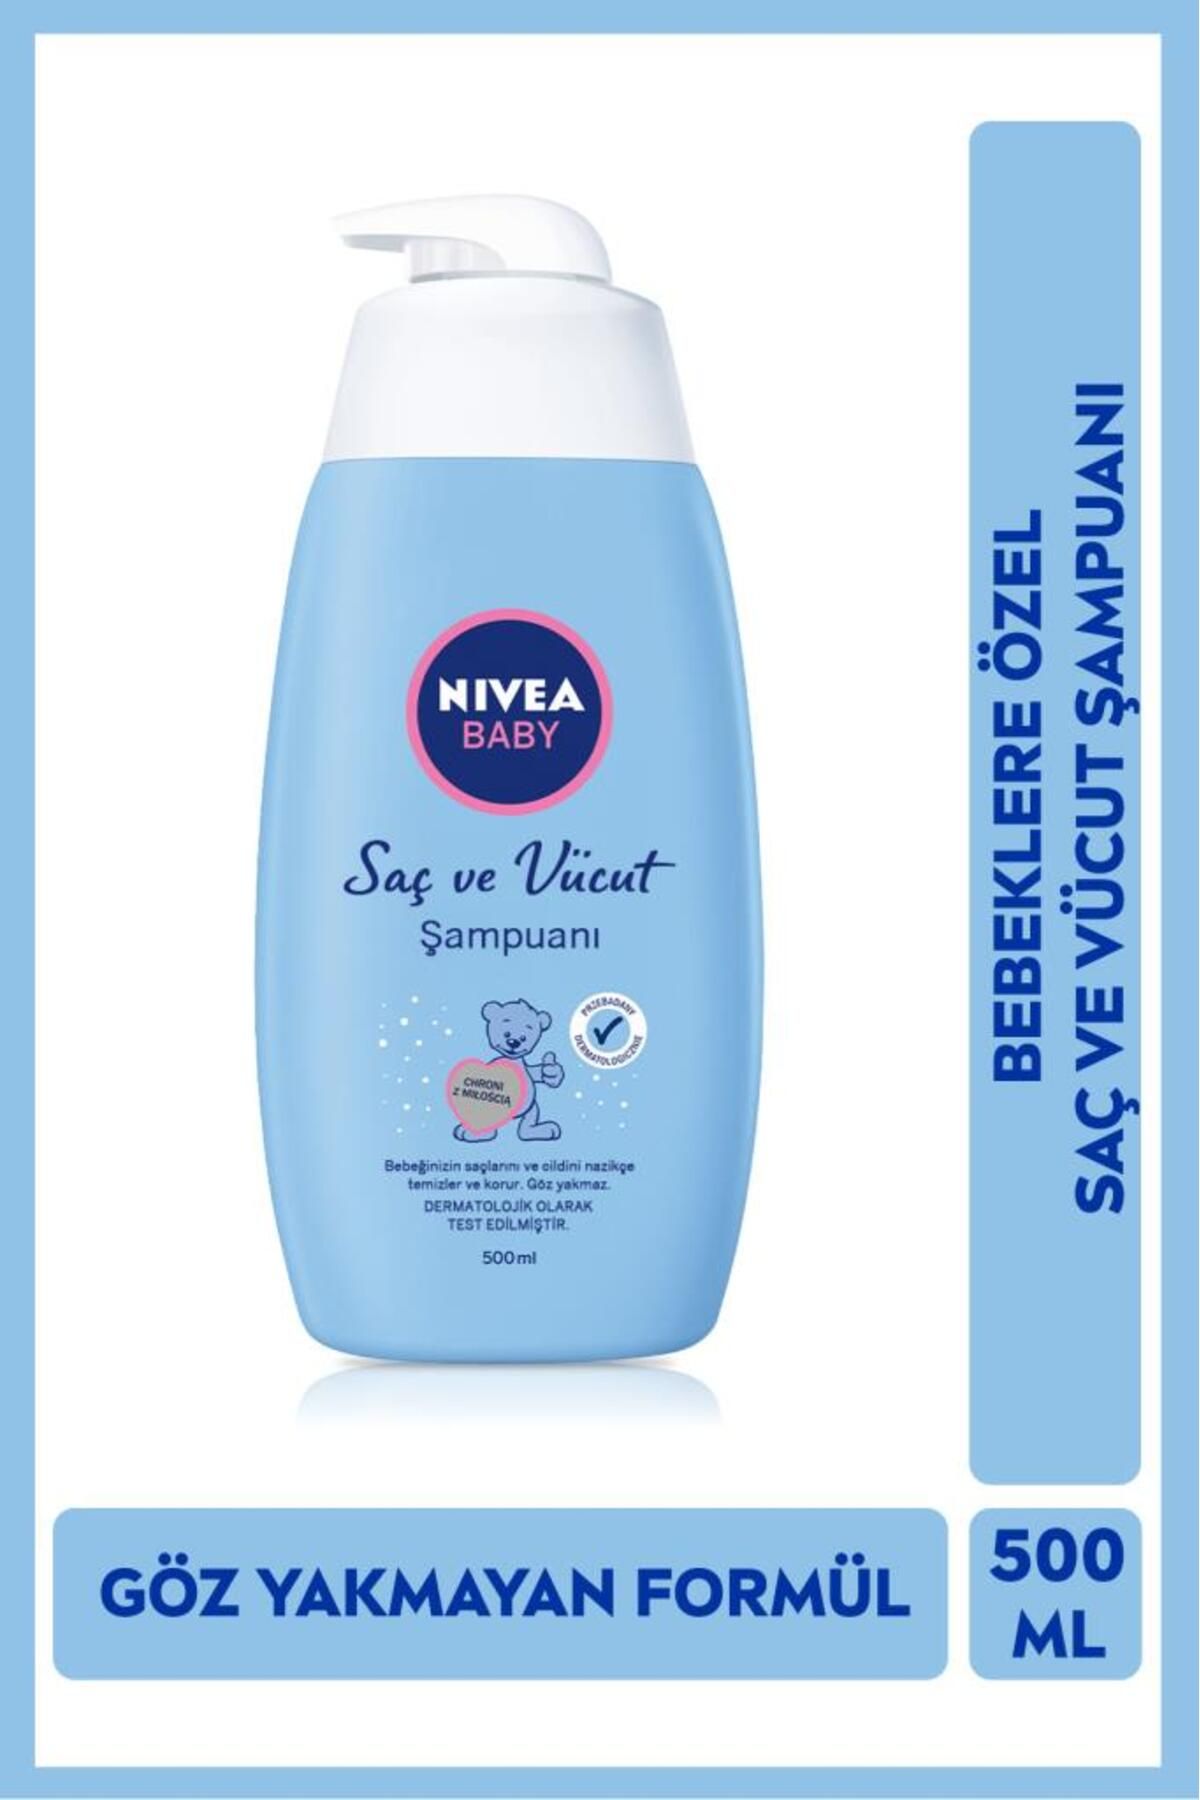 NIVEA Baby Saç Ve Vucut Şampuanı 500ml